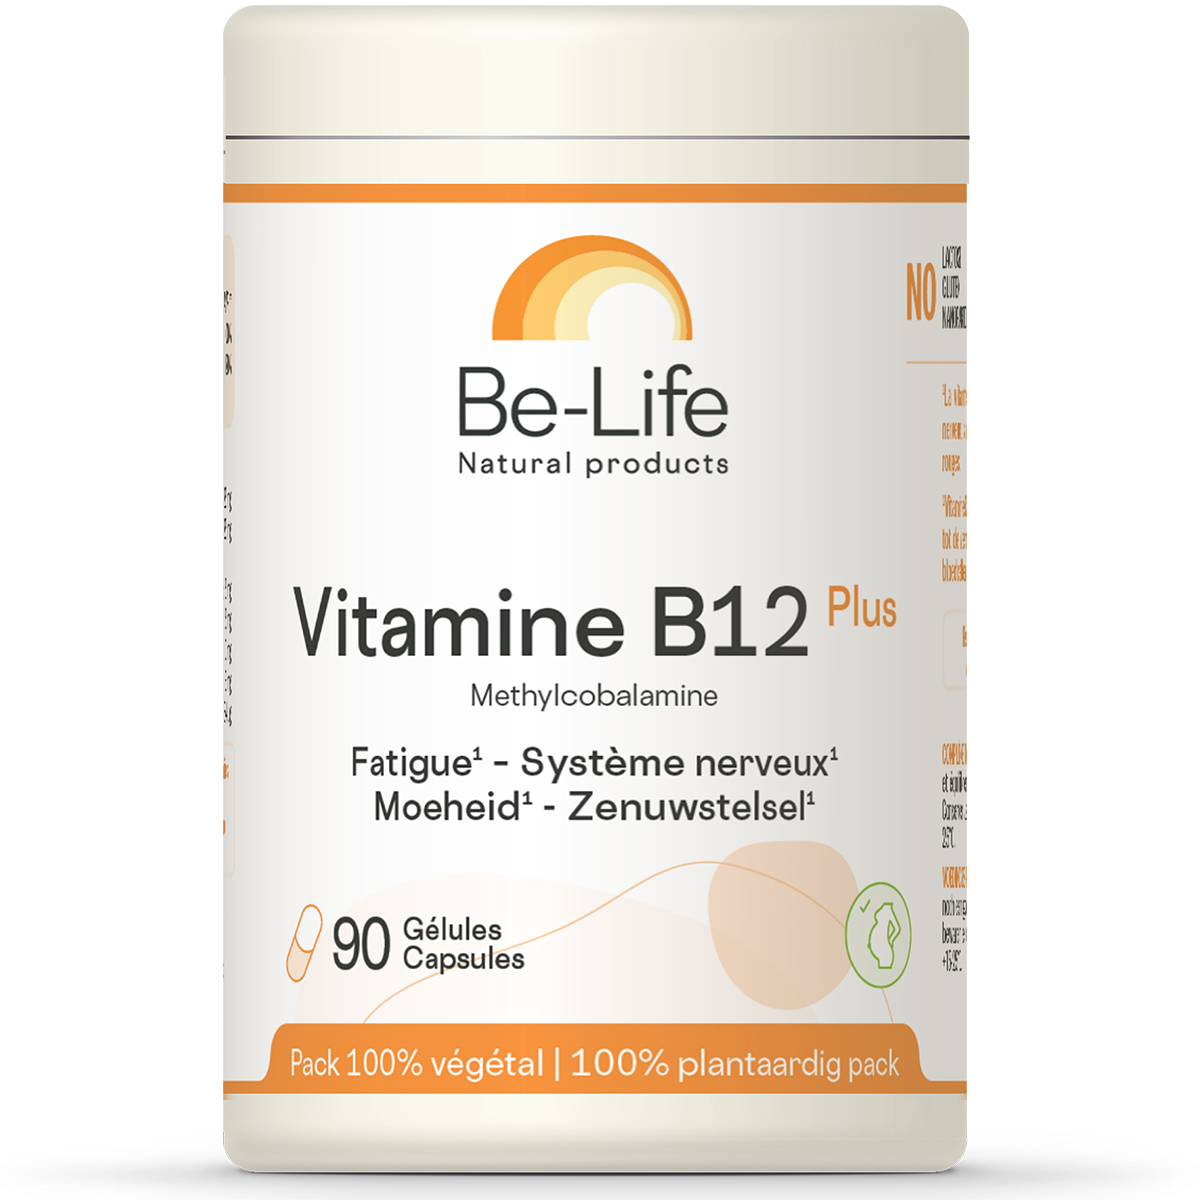 capsule Versterken maak een foto Be-Life Vitamine B12 Plus Vitaliteit - Zenuwstelsel 90 Capsules |  Zwangerschapsvitaminen